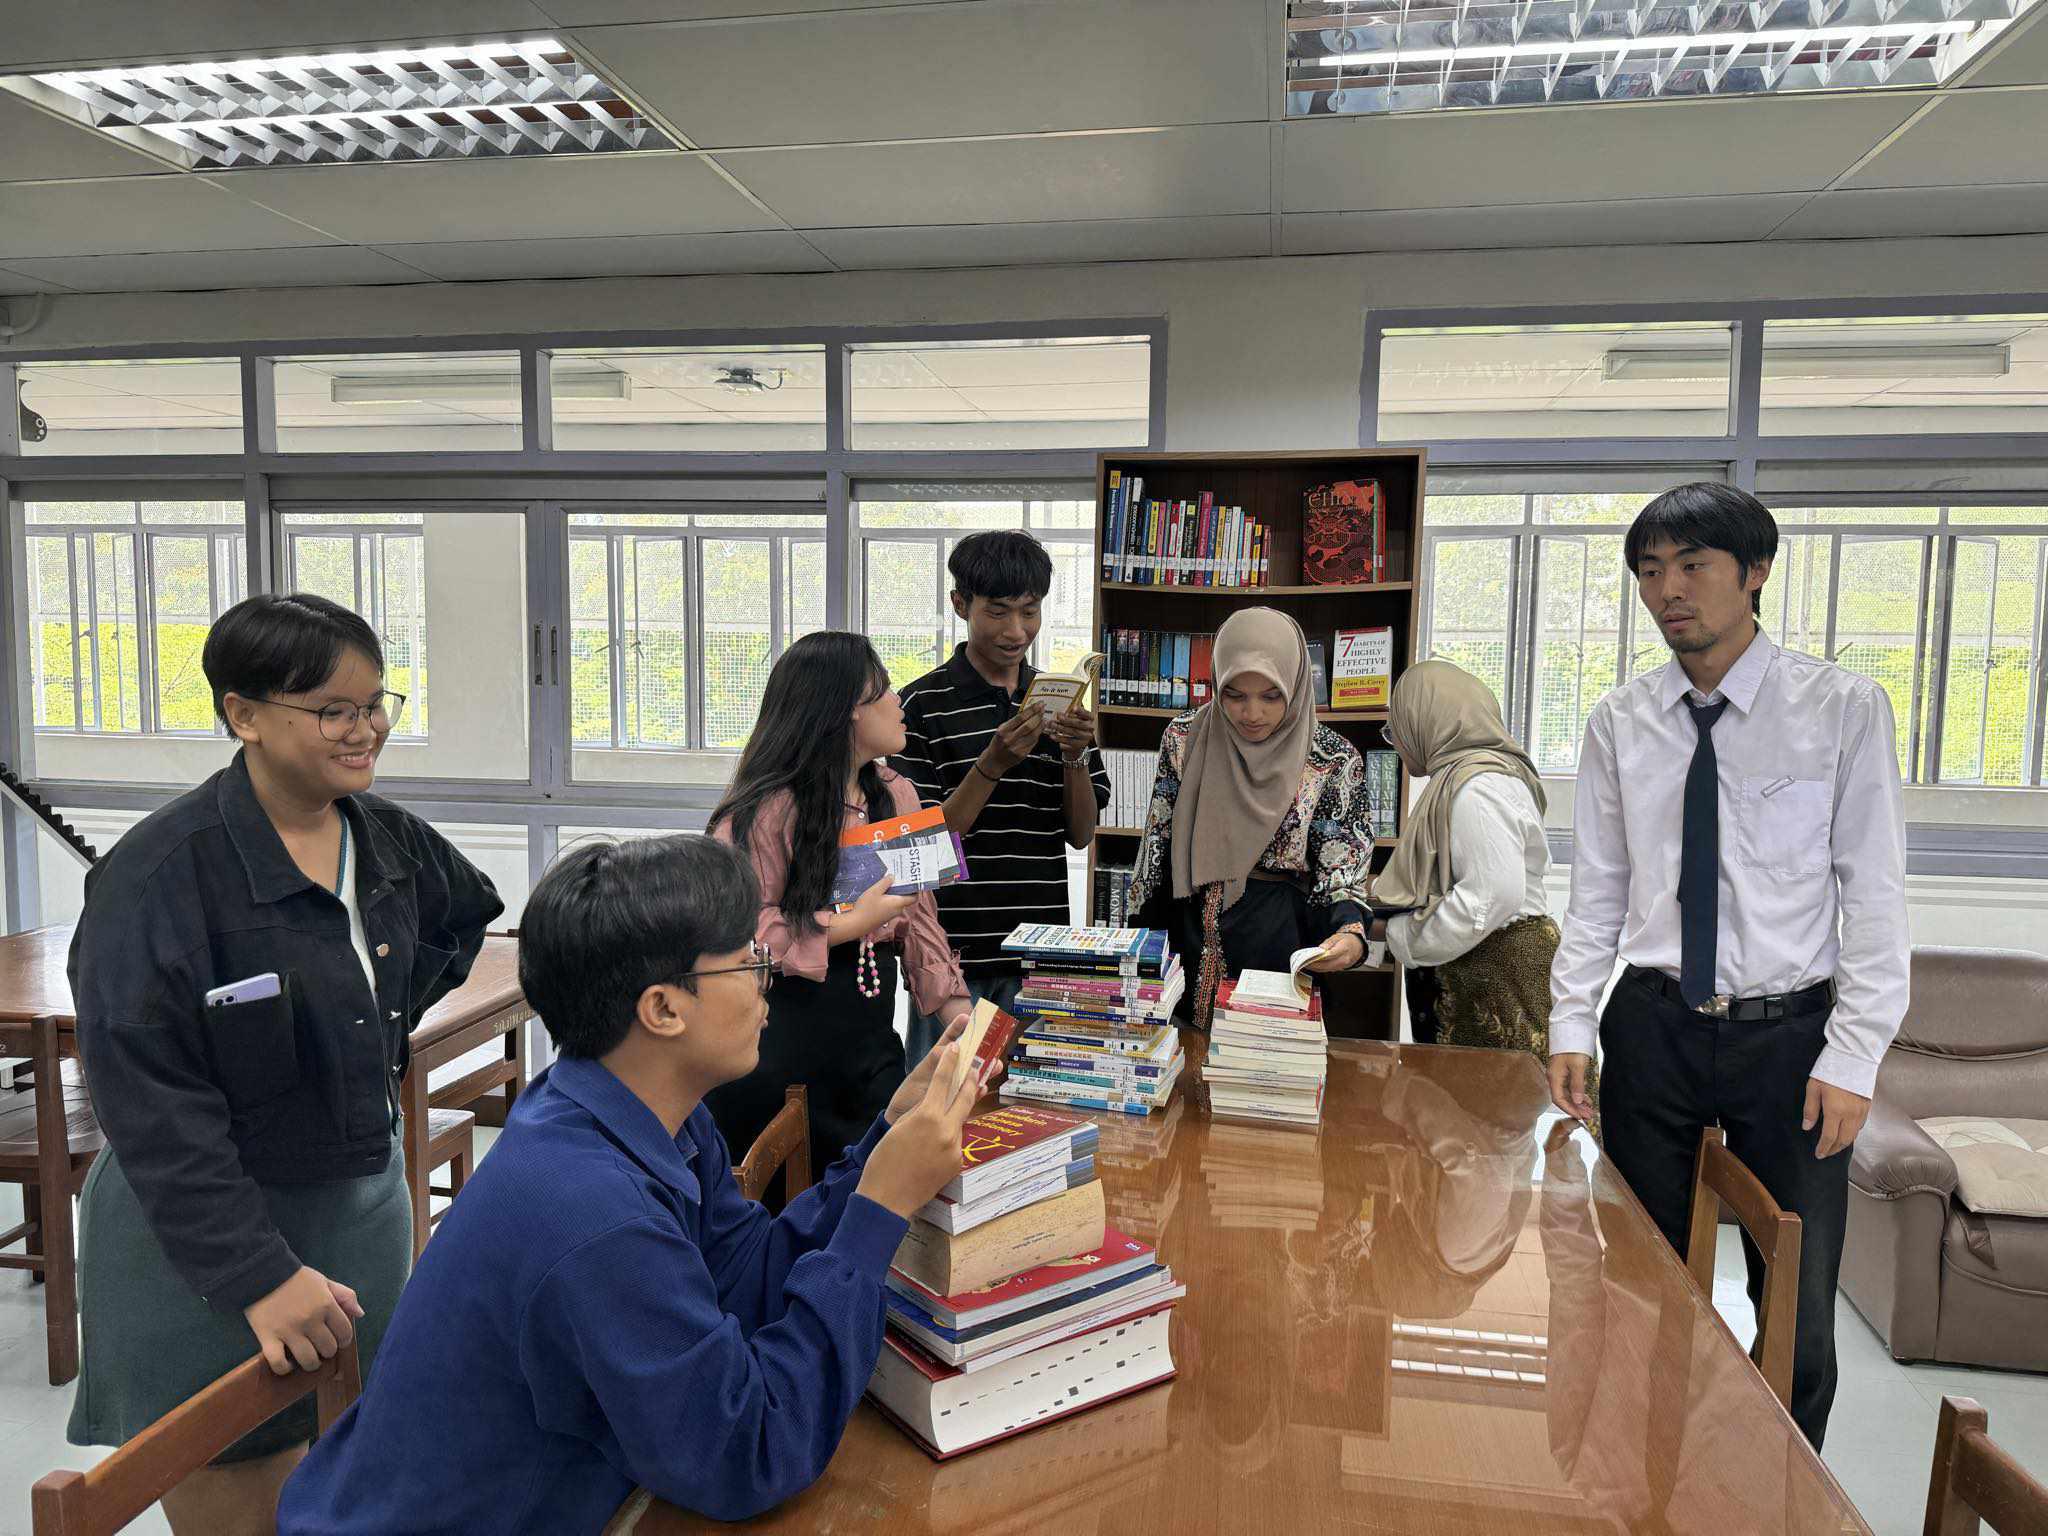 20. ต้อนรับนักศึกษาแลกเปลี่ยนจาก Universitas Negeri Surabaya ประเทศอินโดนีเซีย เยี่ยมชมสำนักวิทยบริการและเทคโนโลยีสารสนเทศ มหาวิทยาลัยราชภัฏกำแพงเพชร